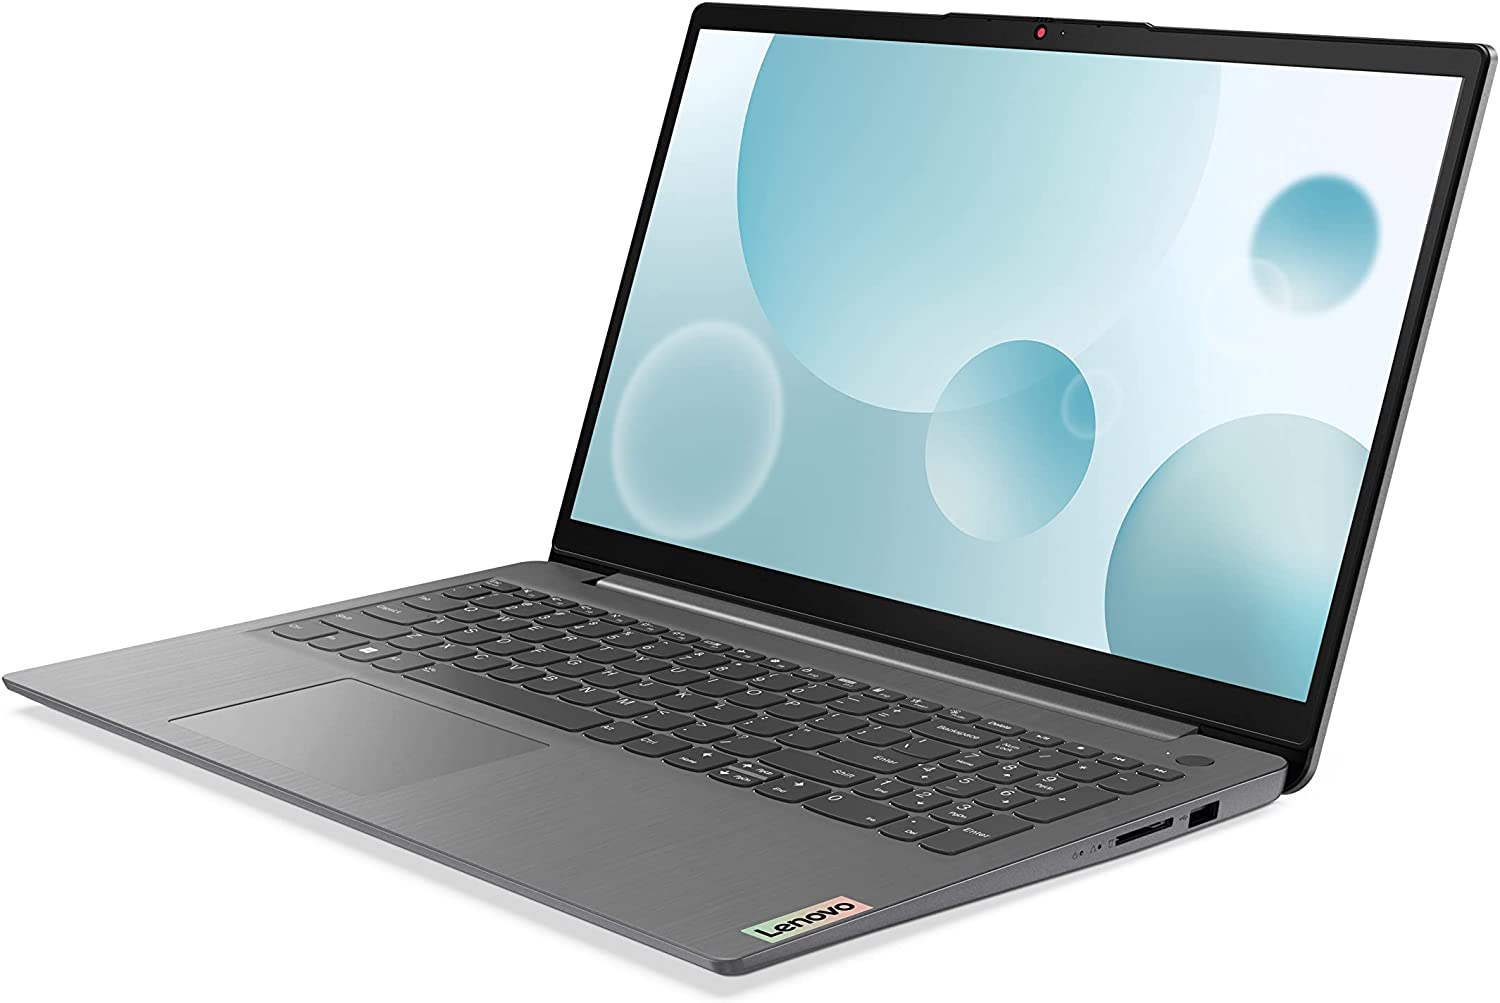 O laptop Lenovo IdeaPad 3i em um fundo branco.